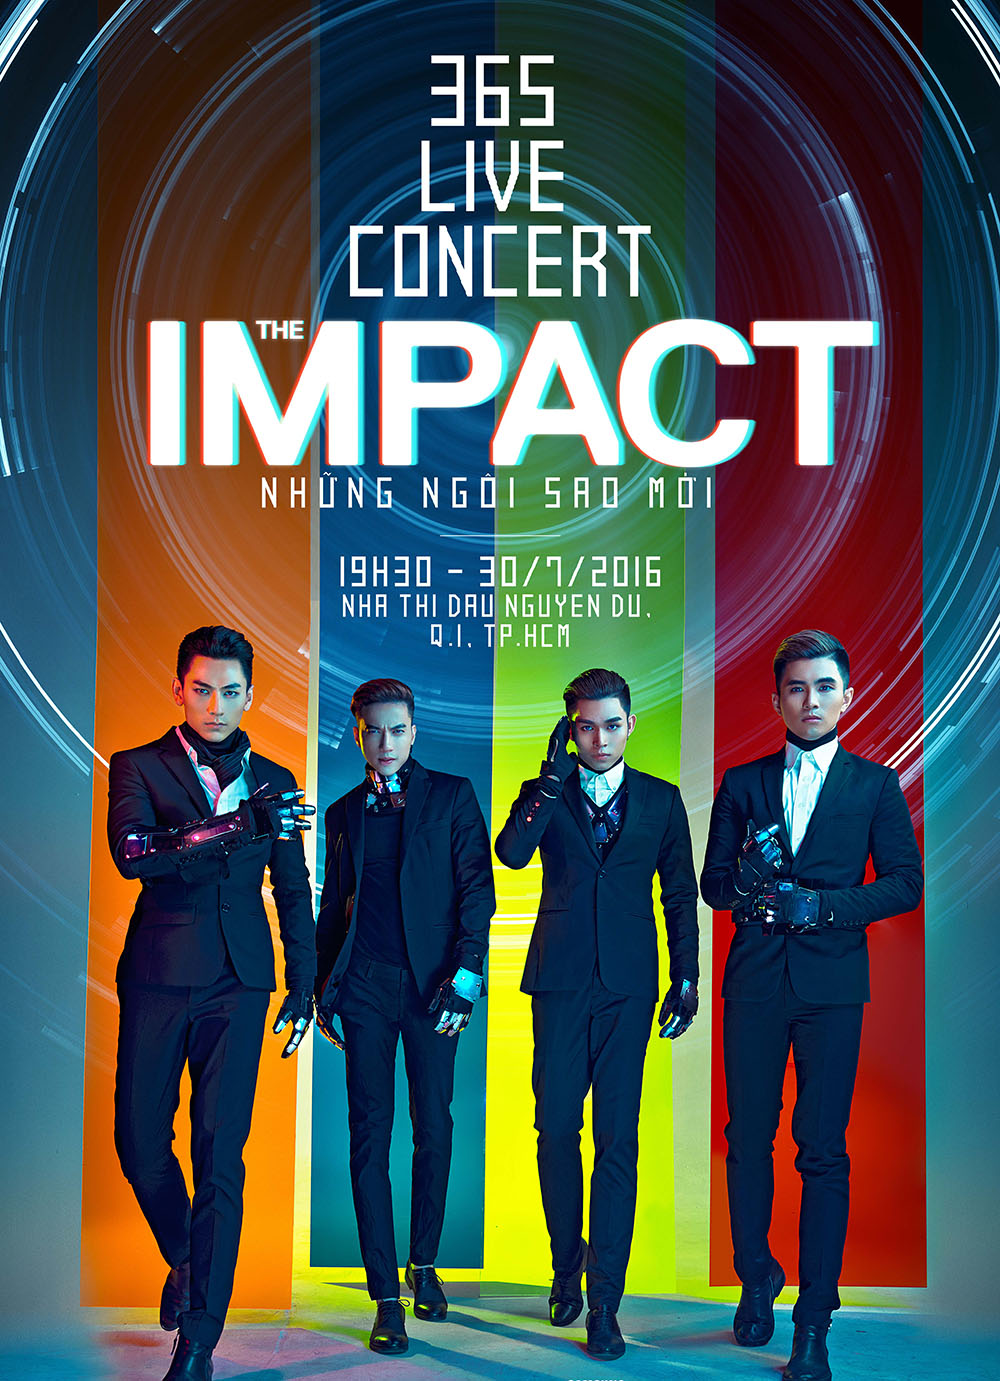 The Impact - Những ngôi sao mới sẽ là liveshow cuối cùng mà bốn thành viên nhóm 365 đứng cùng nhau trên một sân khấu với vai trò nhóm nhạc